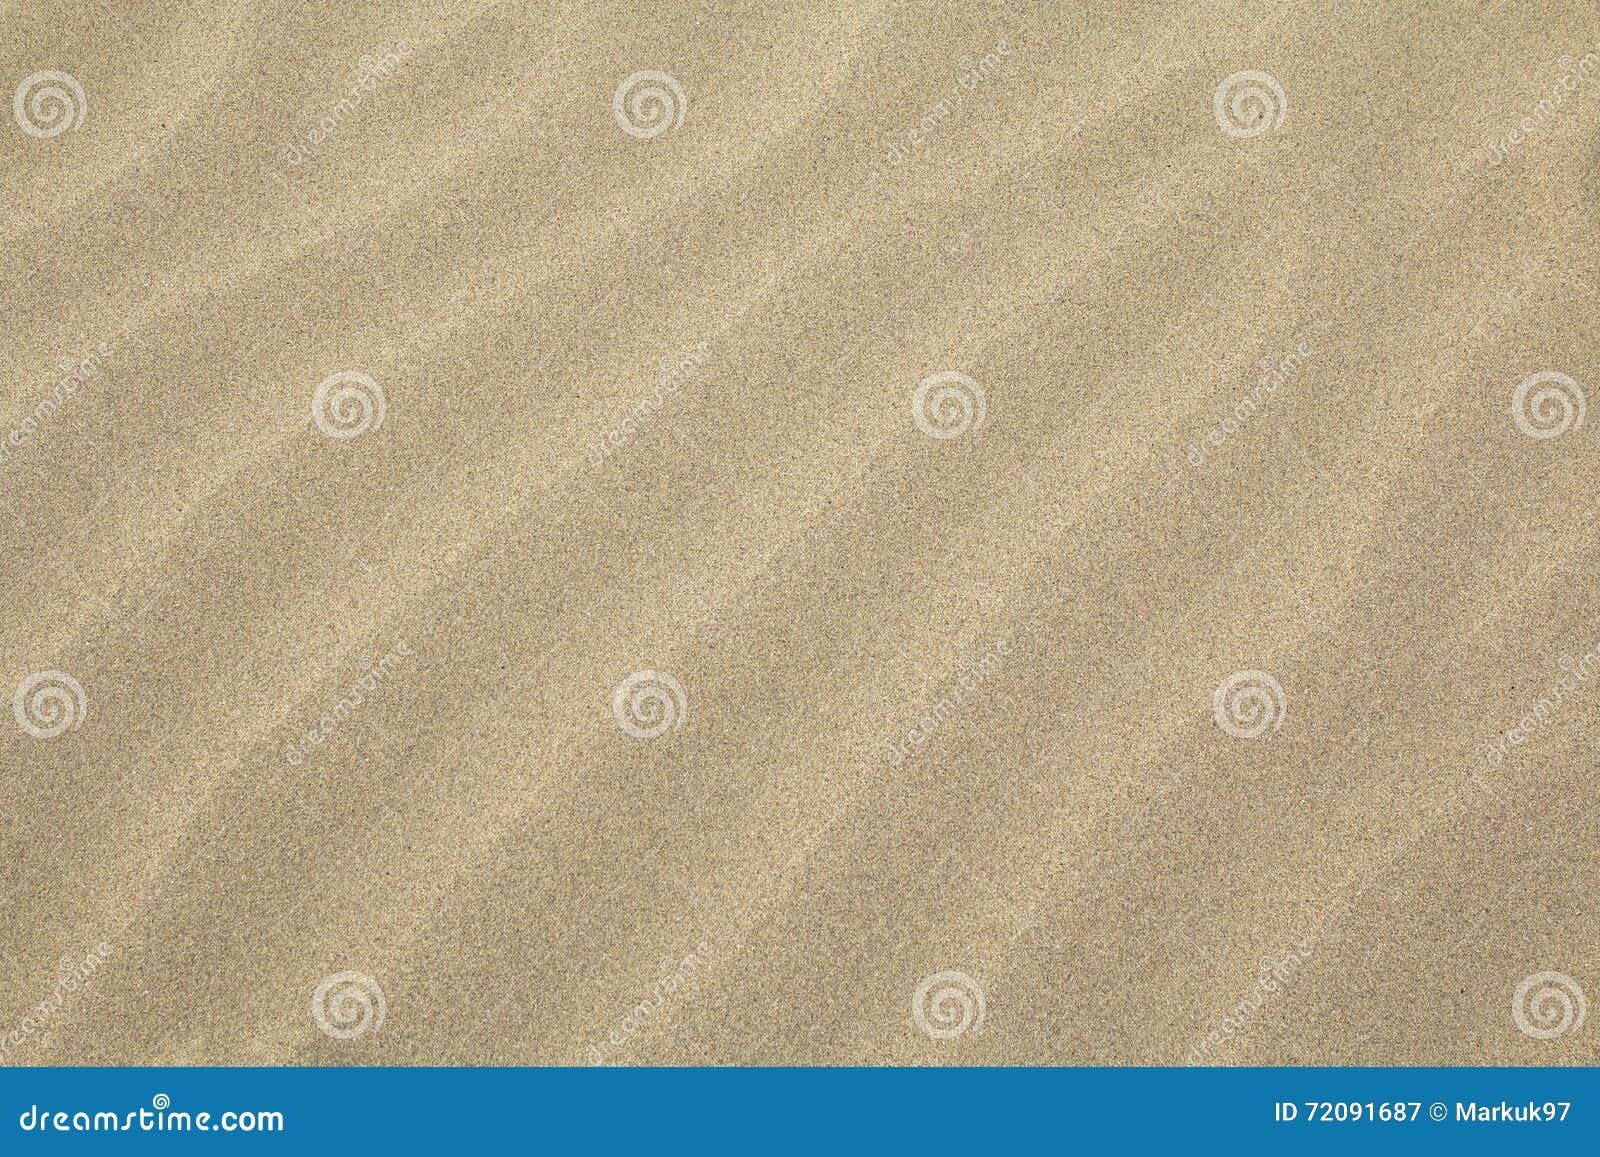 rippled sand overhead texture